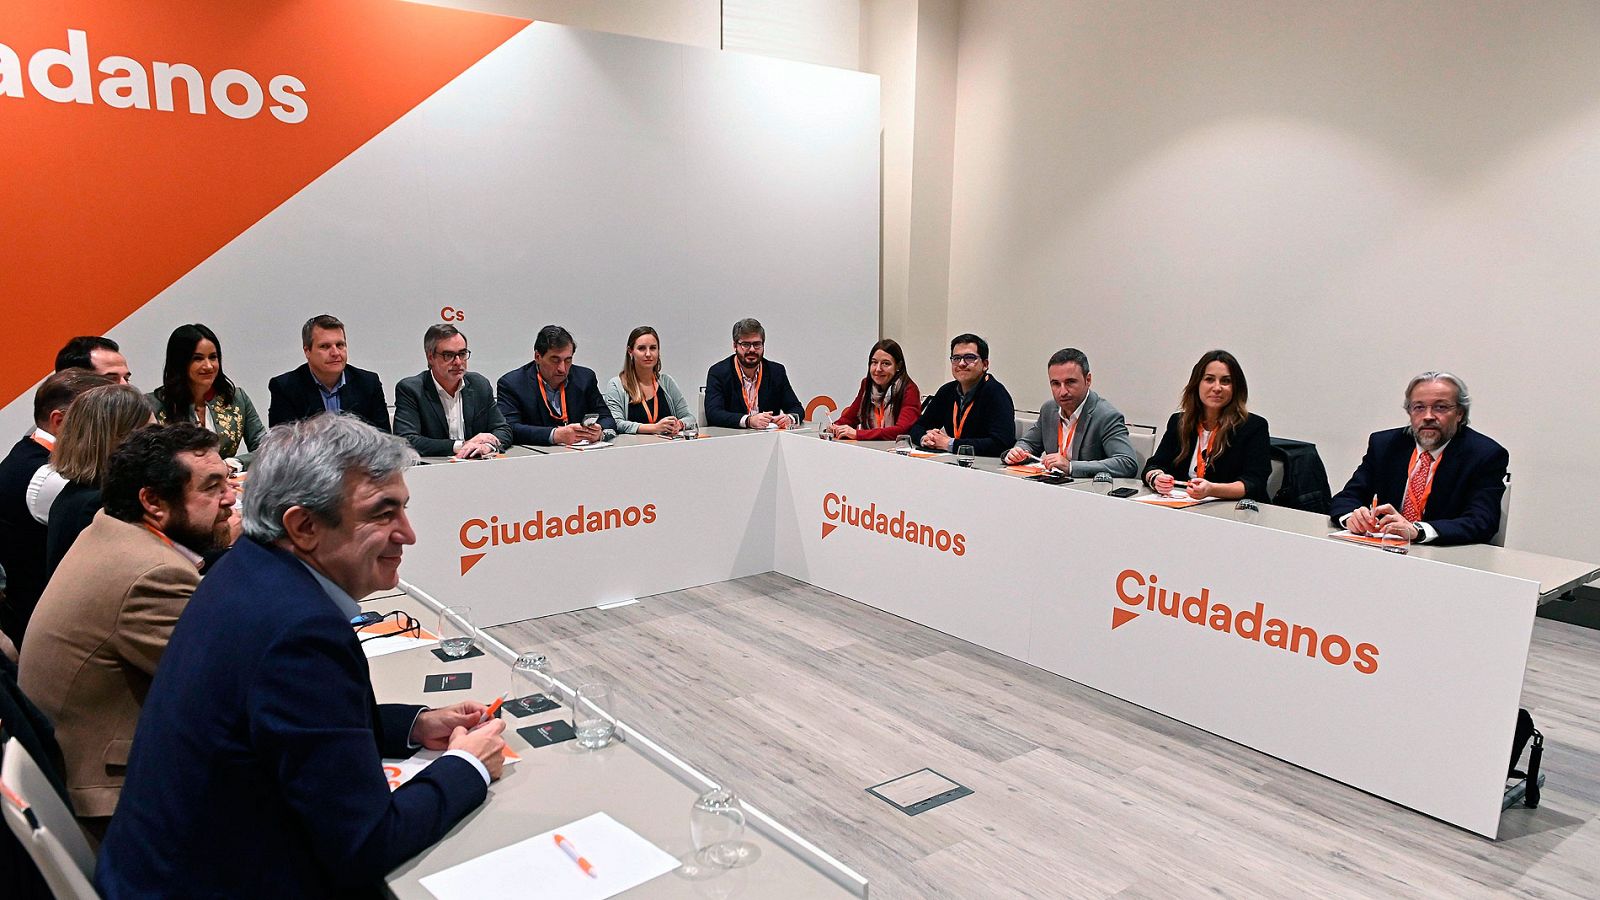 Ciudadanos elige una gestora continuista aunque incorpora a Garicano - RTVE.es